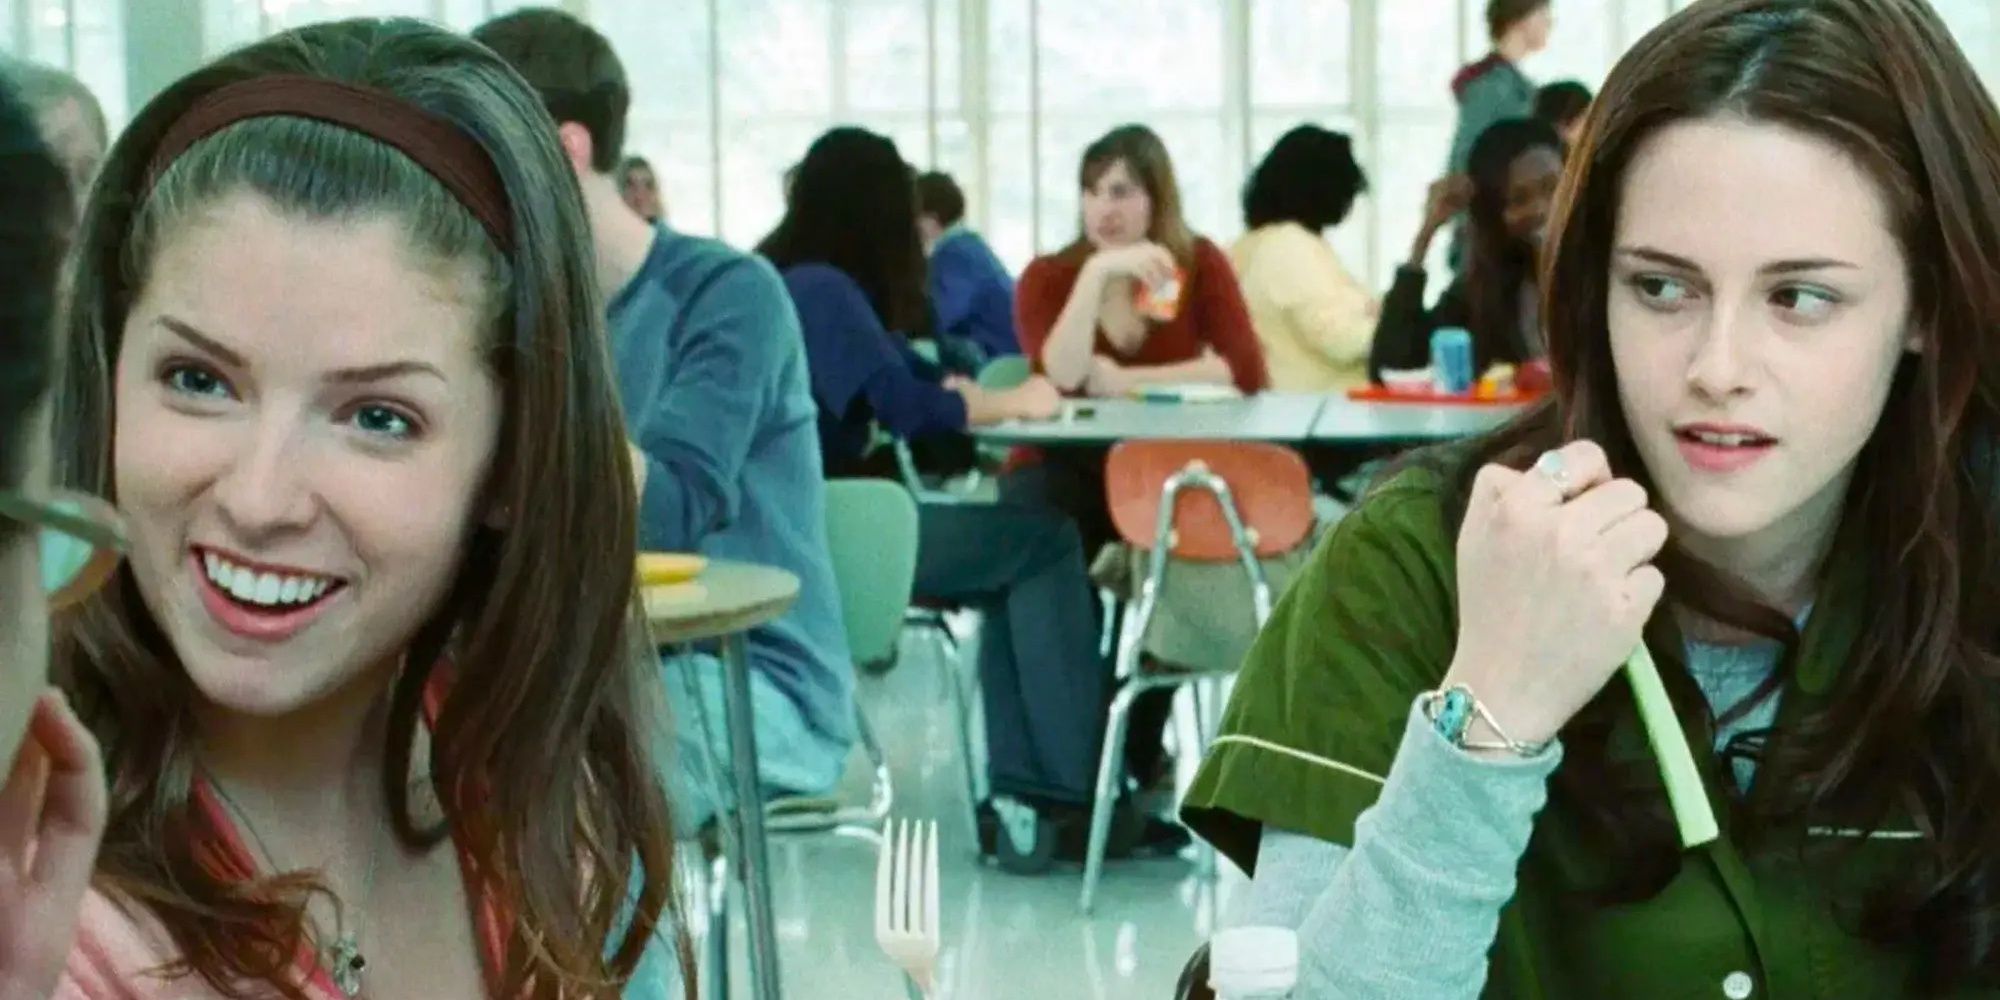 Bella Swan (Kristen Stewart) and Jessica Stanley (Anna Kendrick) eat lunch together in 'Twilight'.